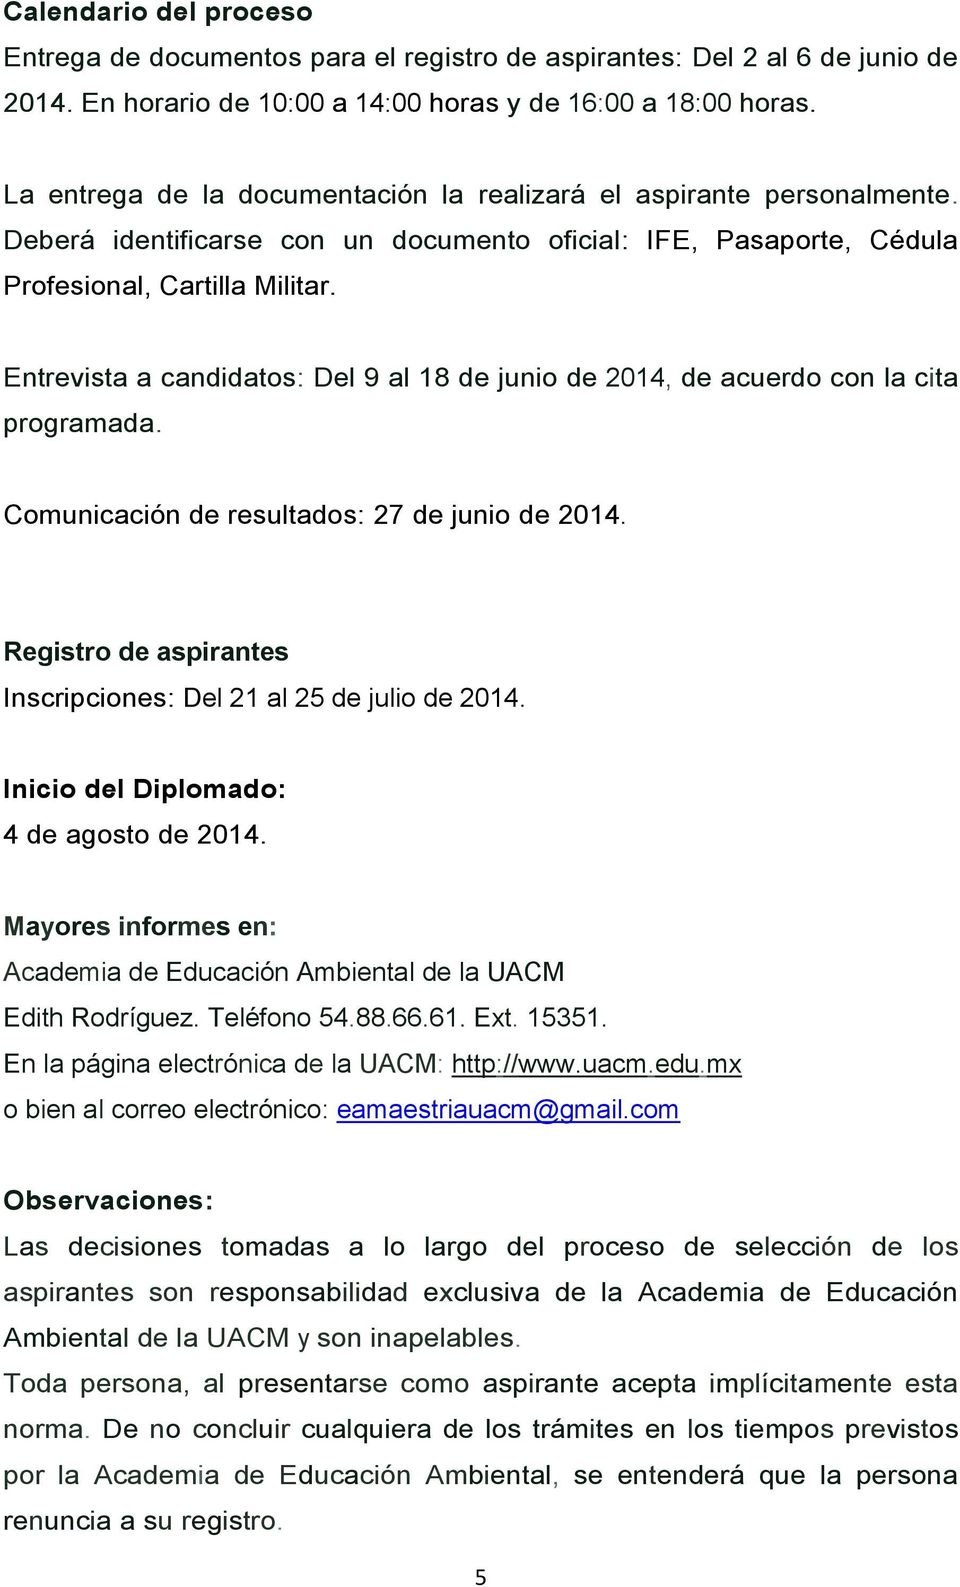 Entrevista a candidatos: Del 9 al 18 de junio de 2014, de acuerdo con la cita programada. Comunicación de resultados: 27 de junio de 2014.